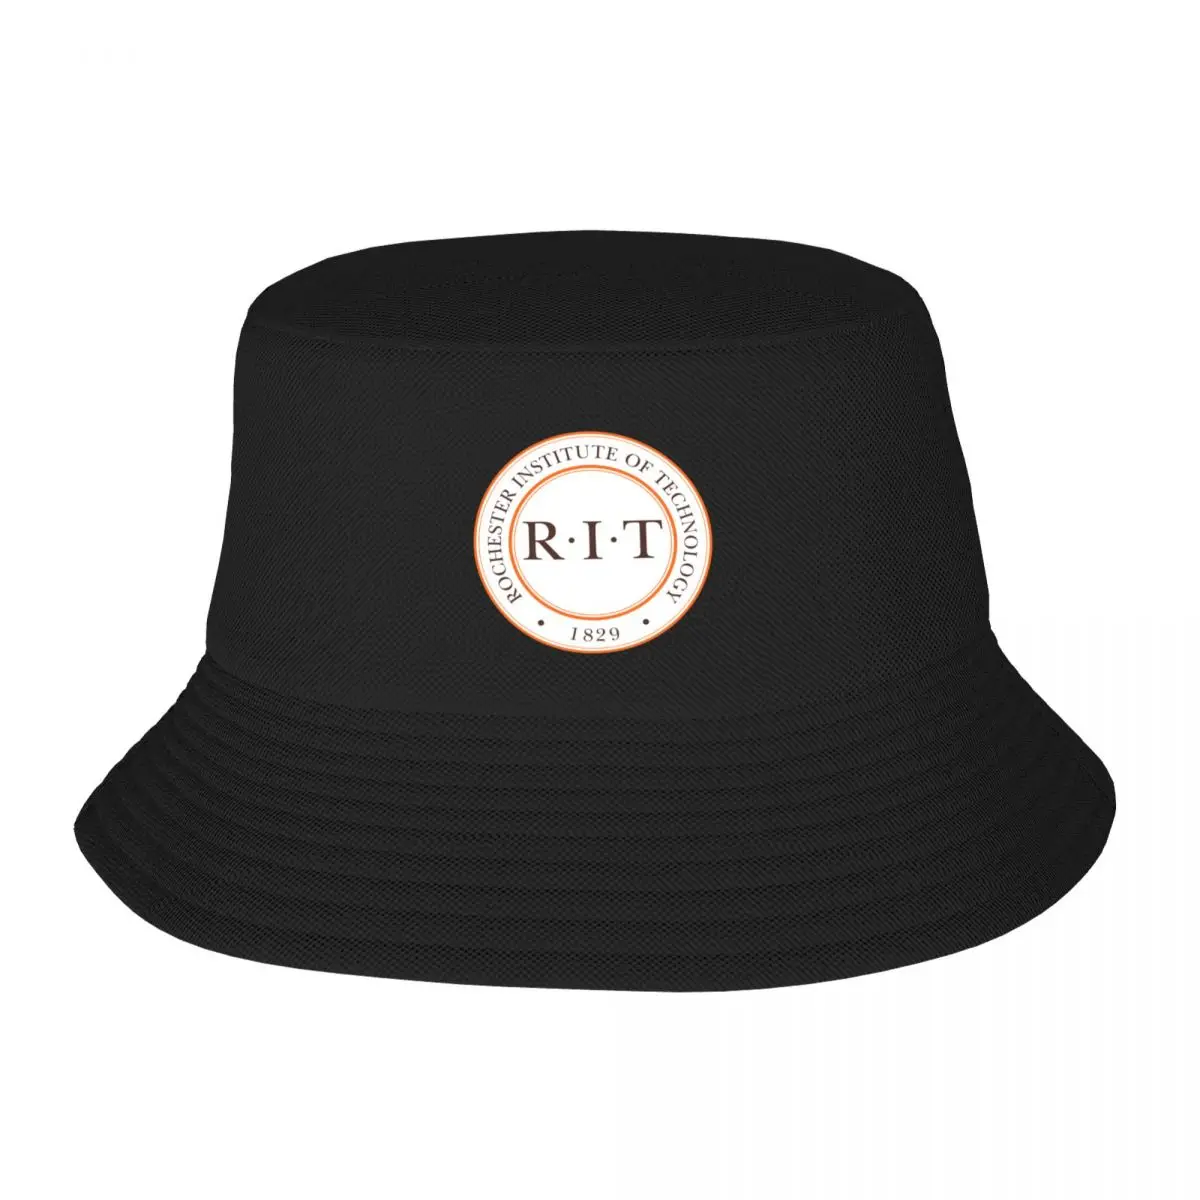 Новый RIT- rochester institute of technology Панама Роскошная Шляпа Люксовый Бренд пенопластовые шляпы для вечеринок Wild Ball Hat Шляпы Женские Мужские